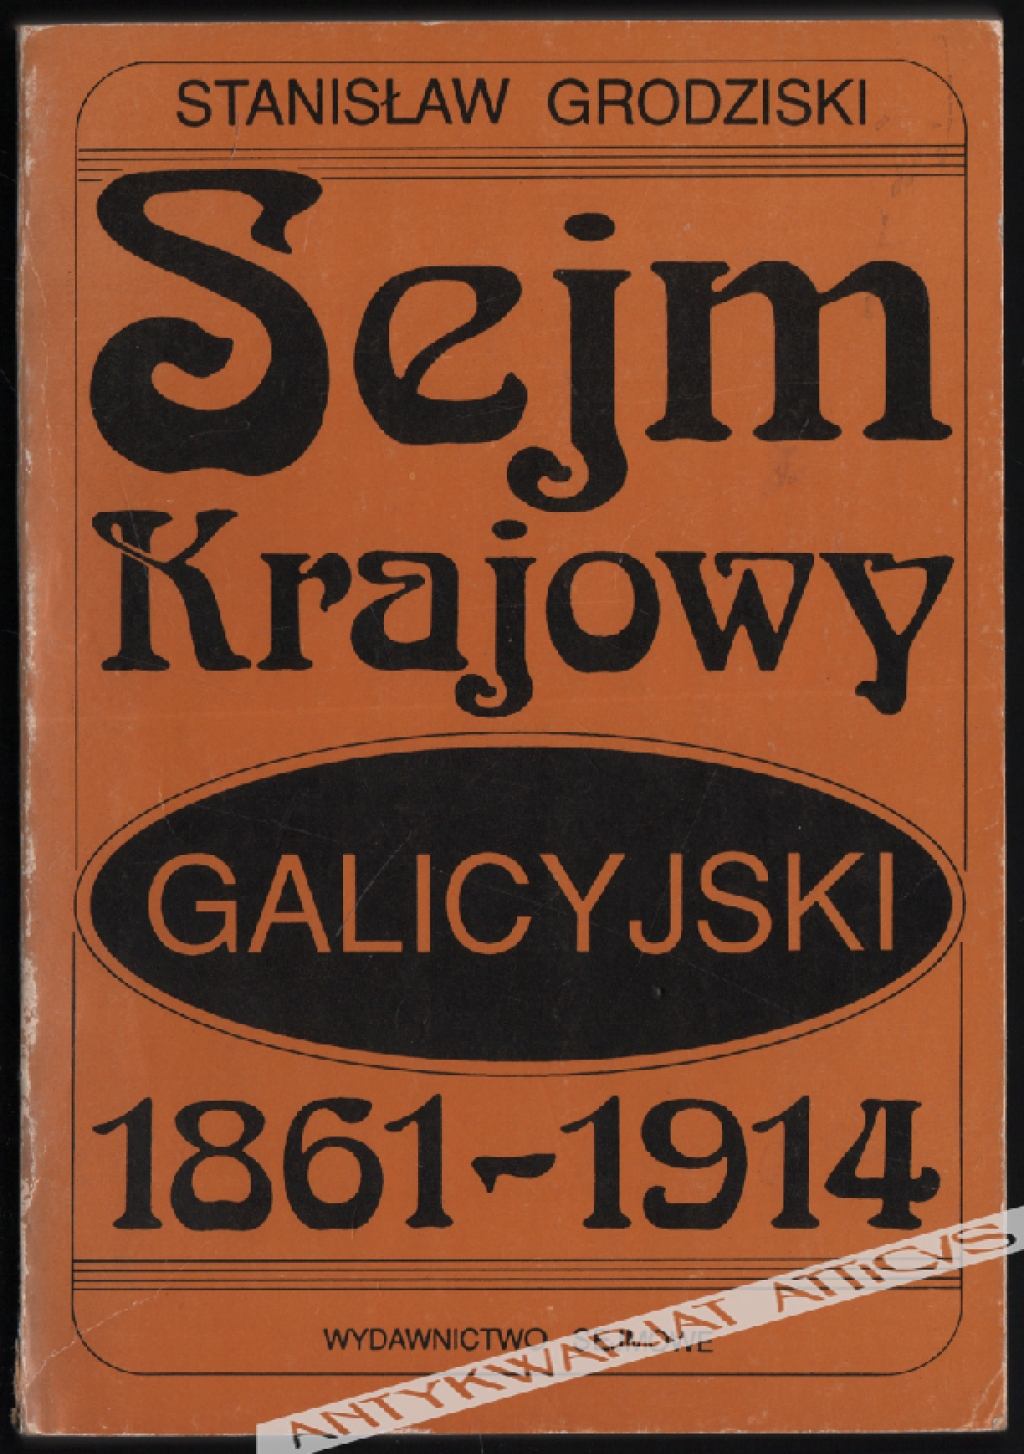 Sejm Krajowy Galicyjski 1861-1914